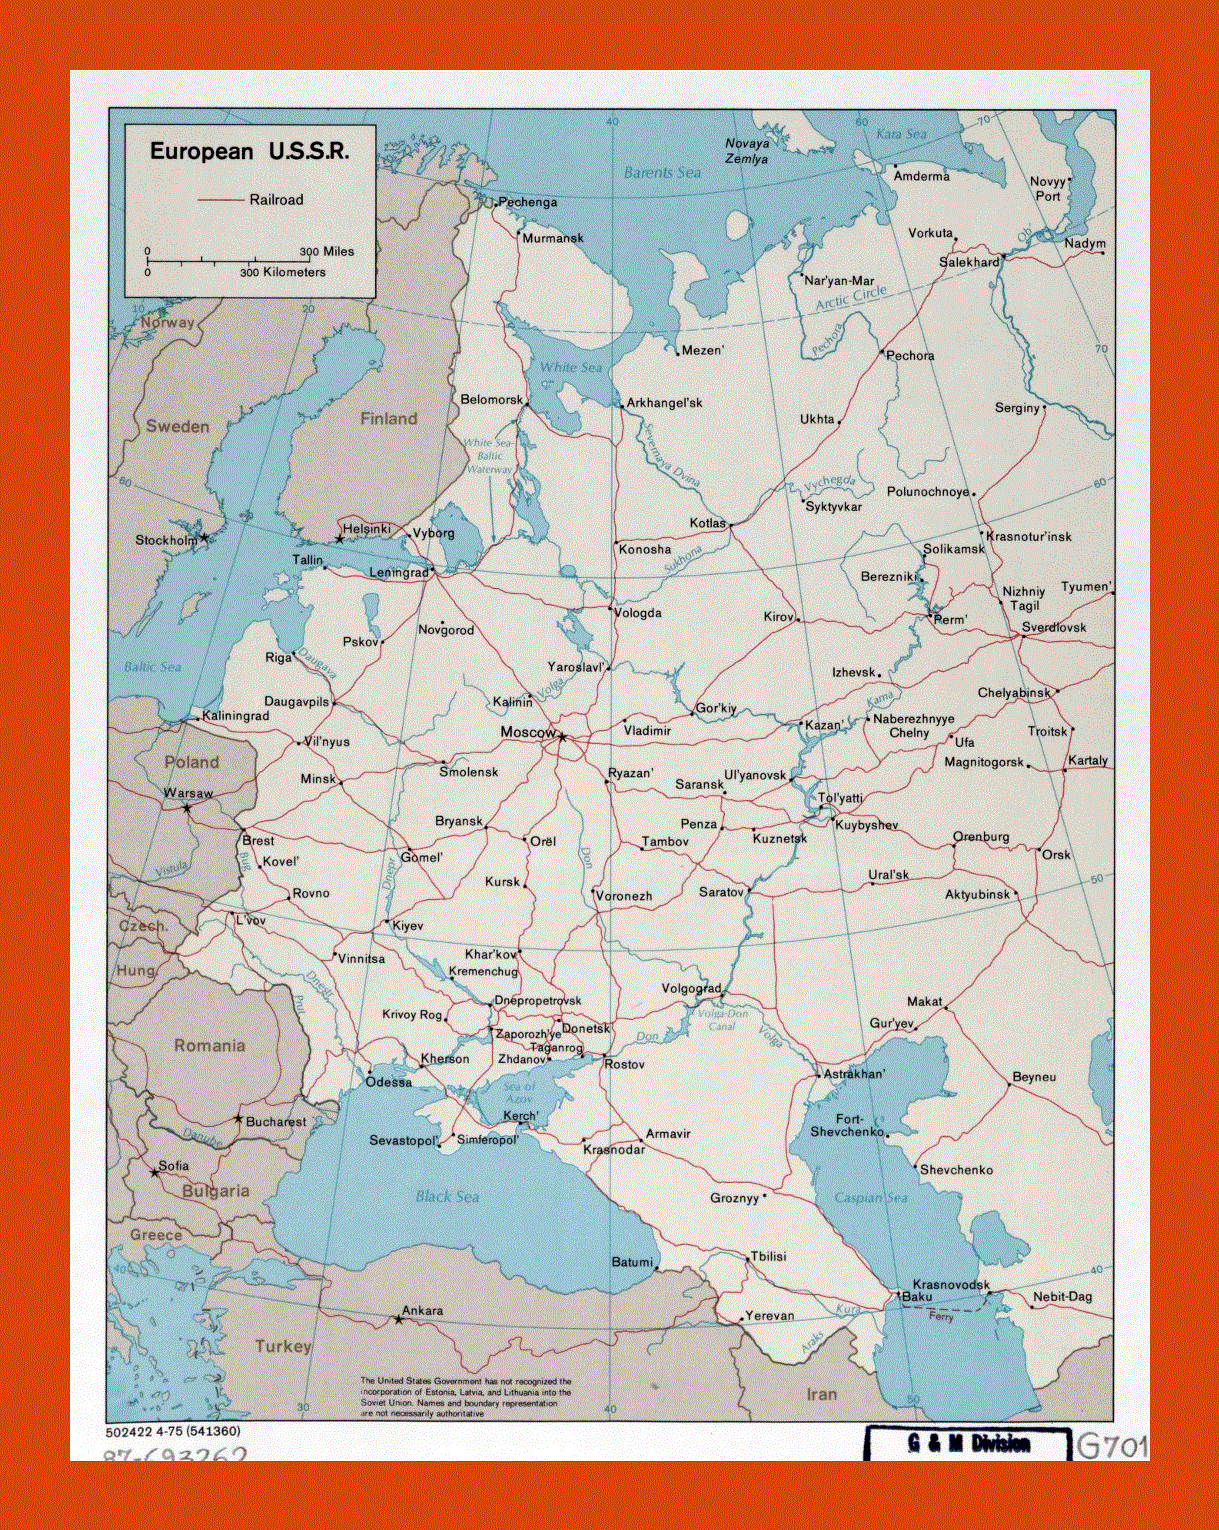 Map of European U.S.S.R.- 1975